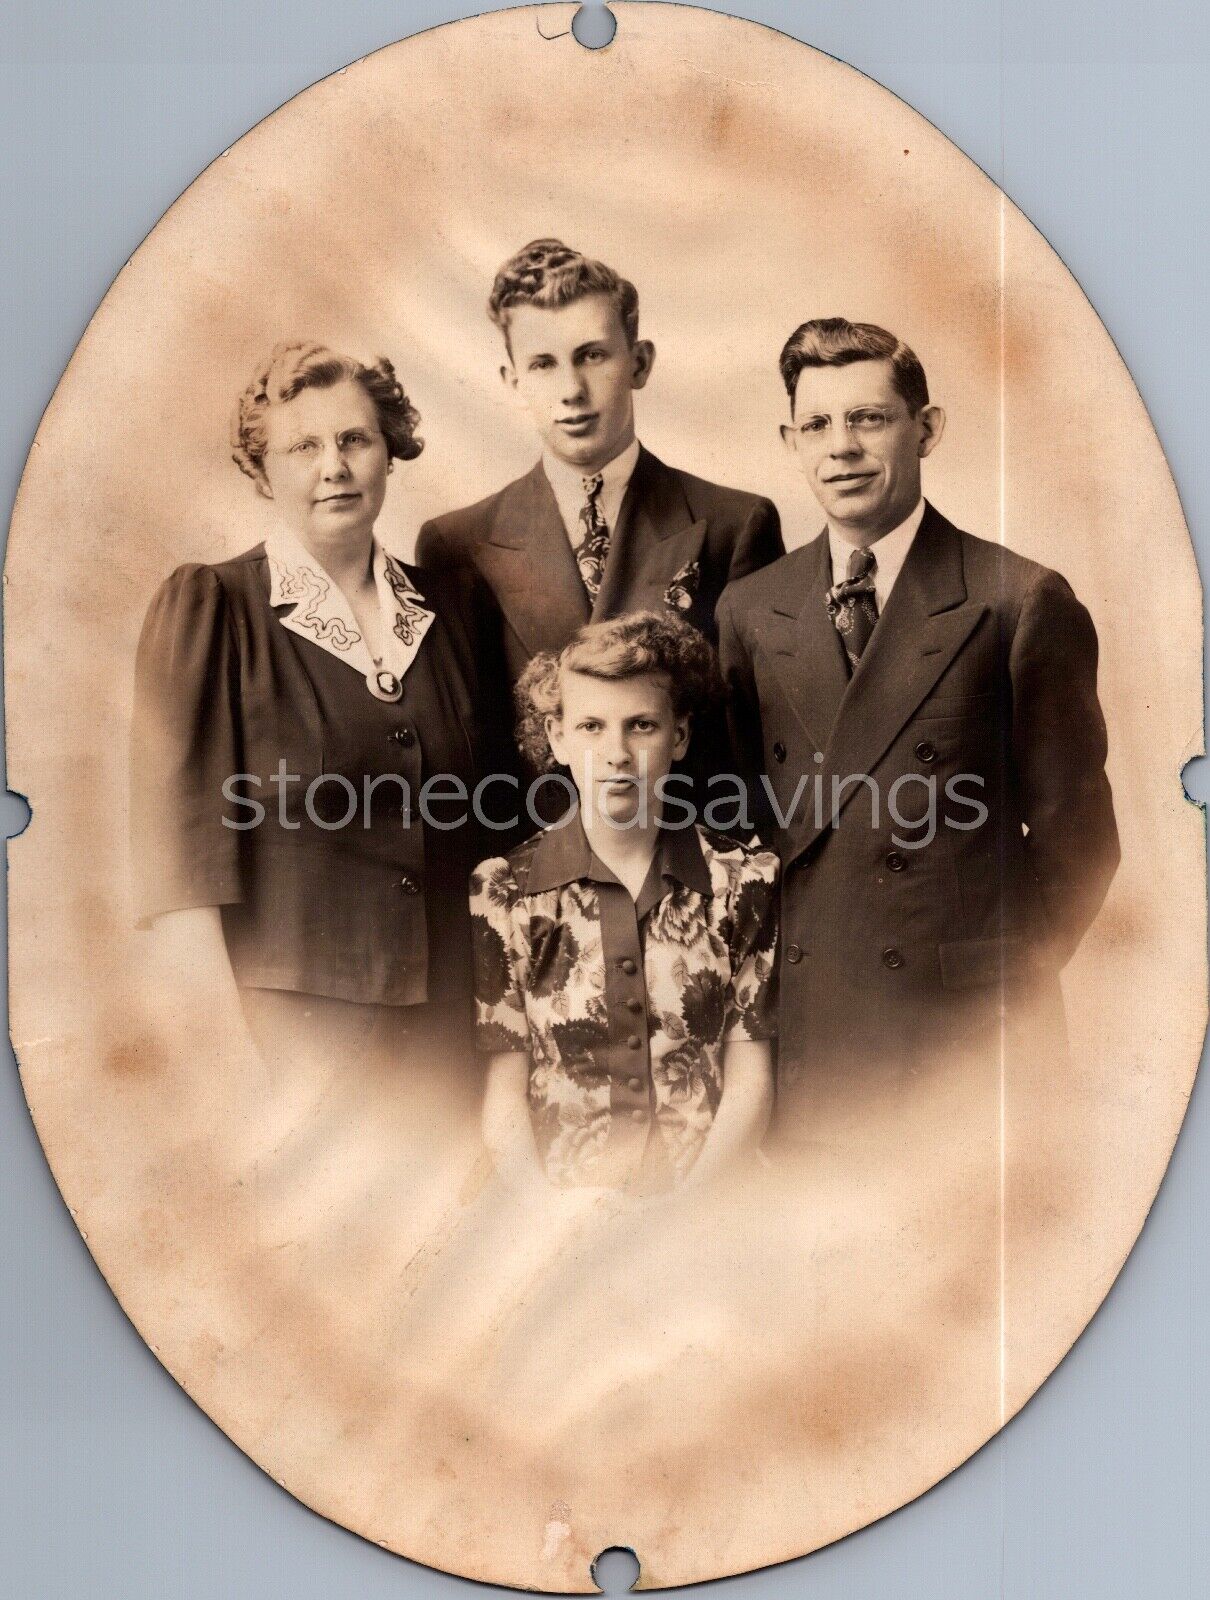 VINTAGE ANTIQUE FAMILY PORTRAIT PHOTO 1920S 1930S OVAL BOKEH STUDIO NICE SHOT